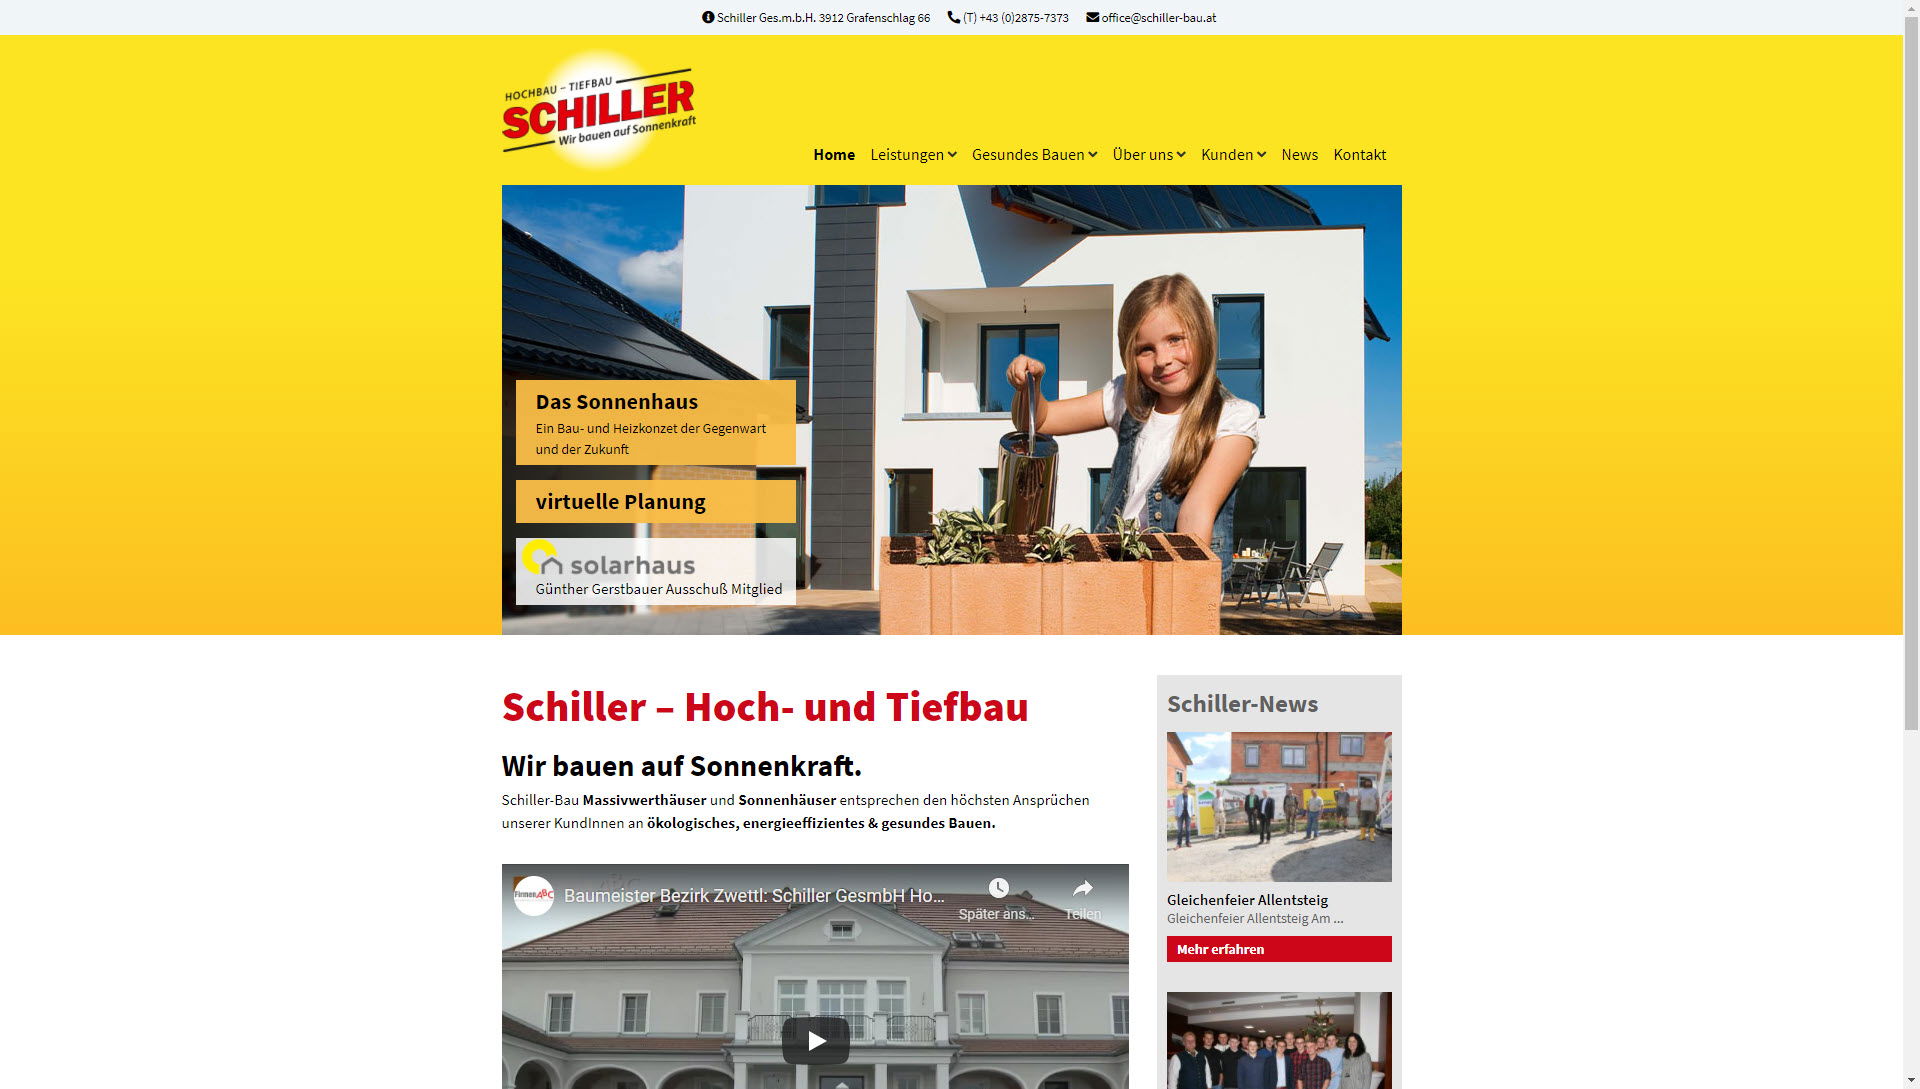 Schiller GesmbH